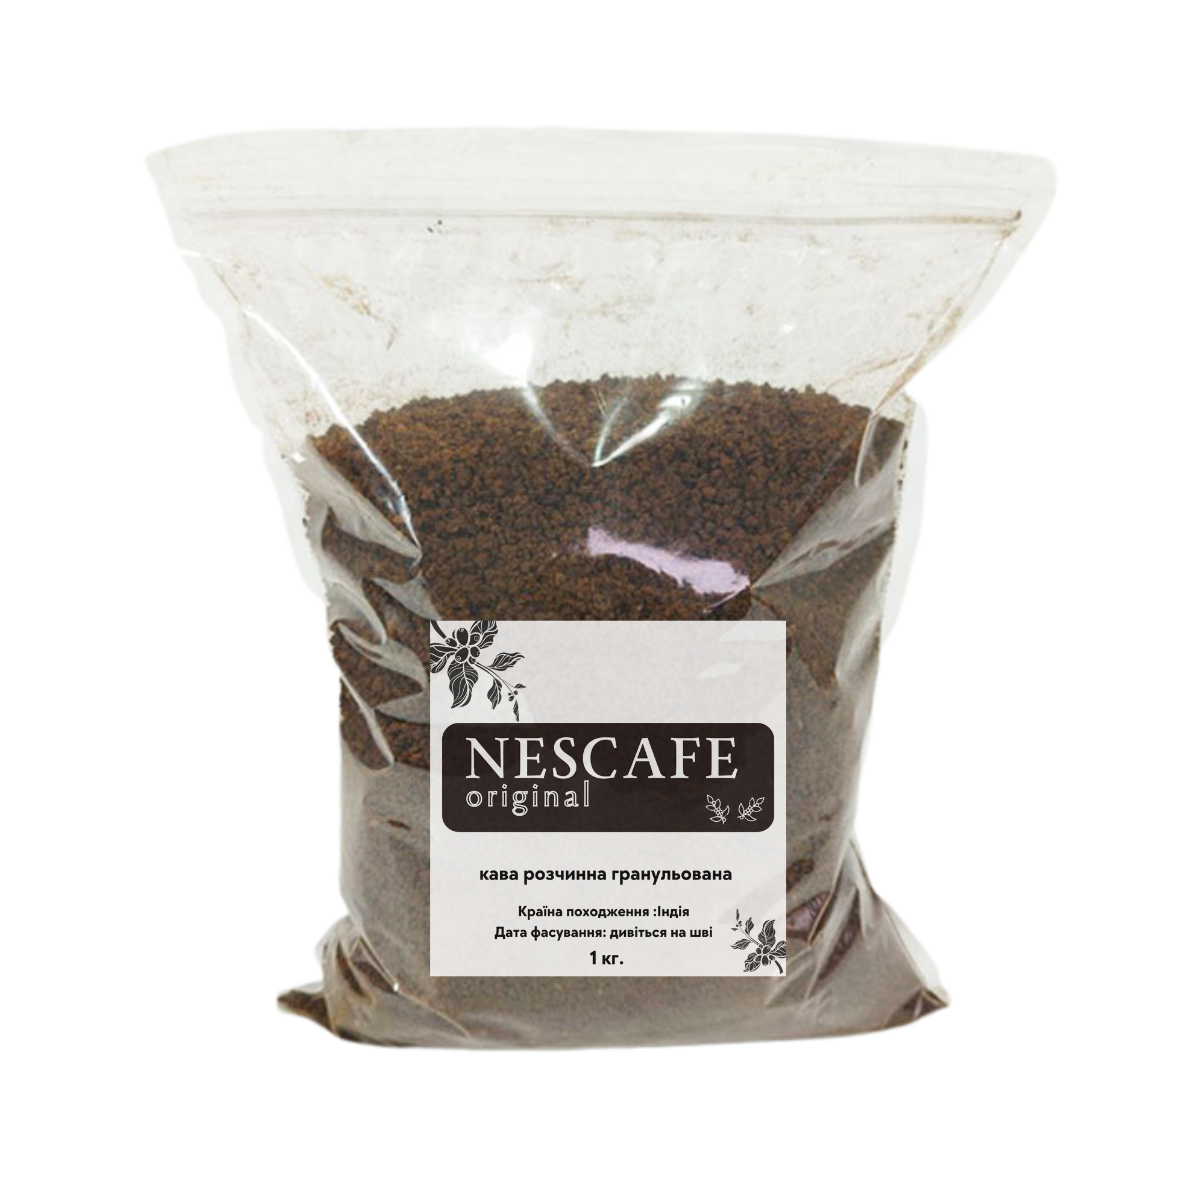 Кава розчинна гранульована «Nescafe Original», 1кг